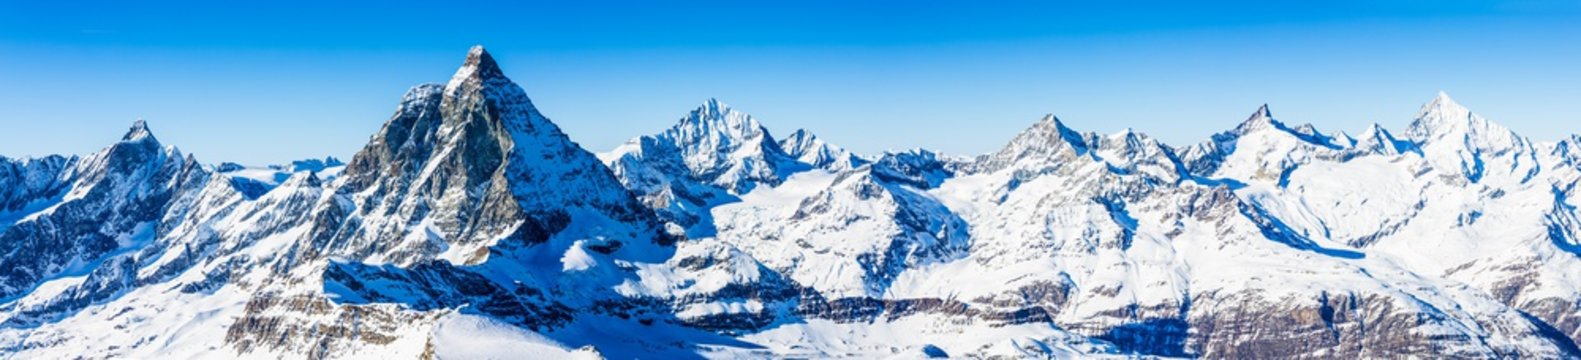 Fototapeta Alpy Szwajcarskie - Matterhorn, Szwajcaria, panorama